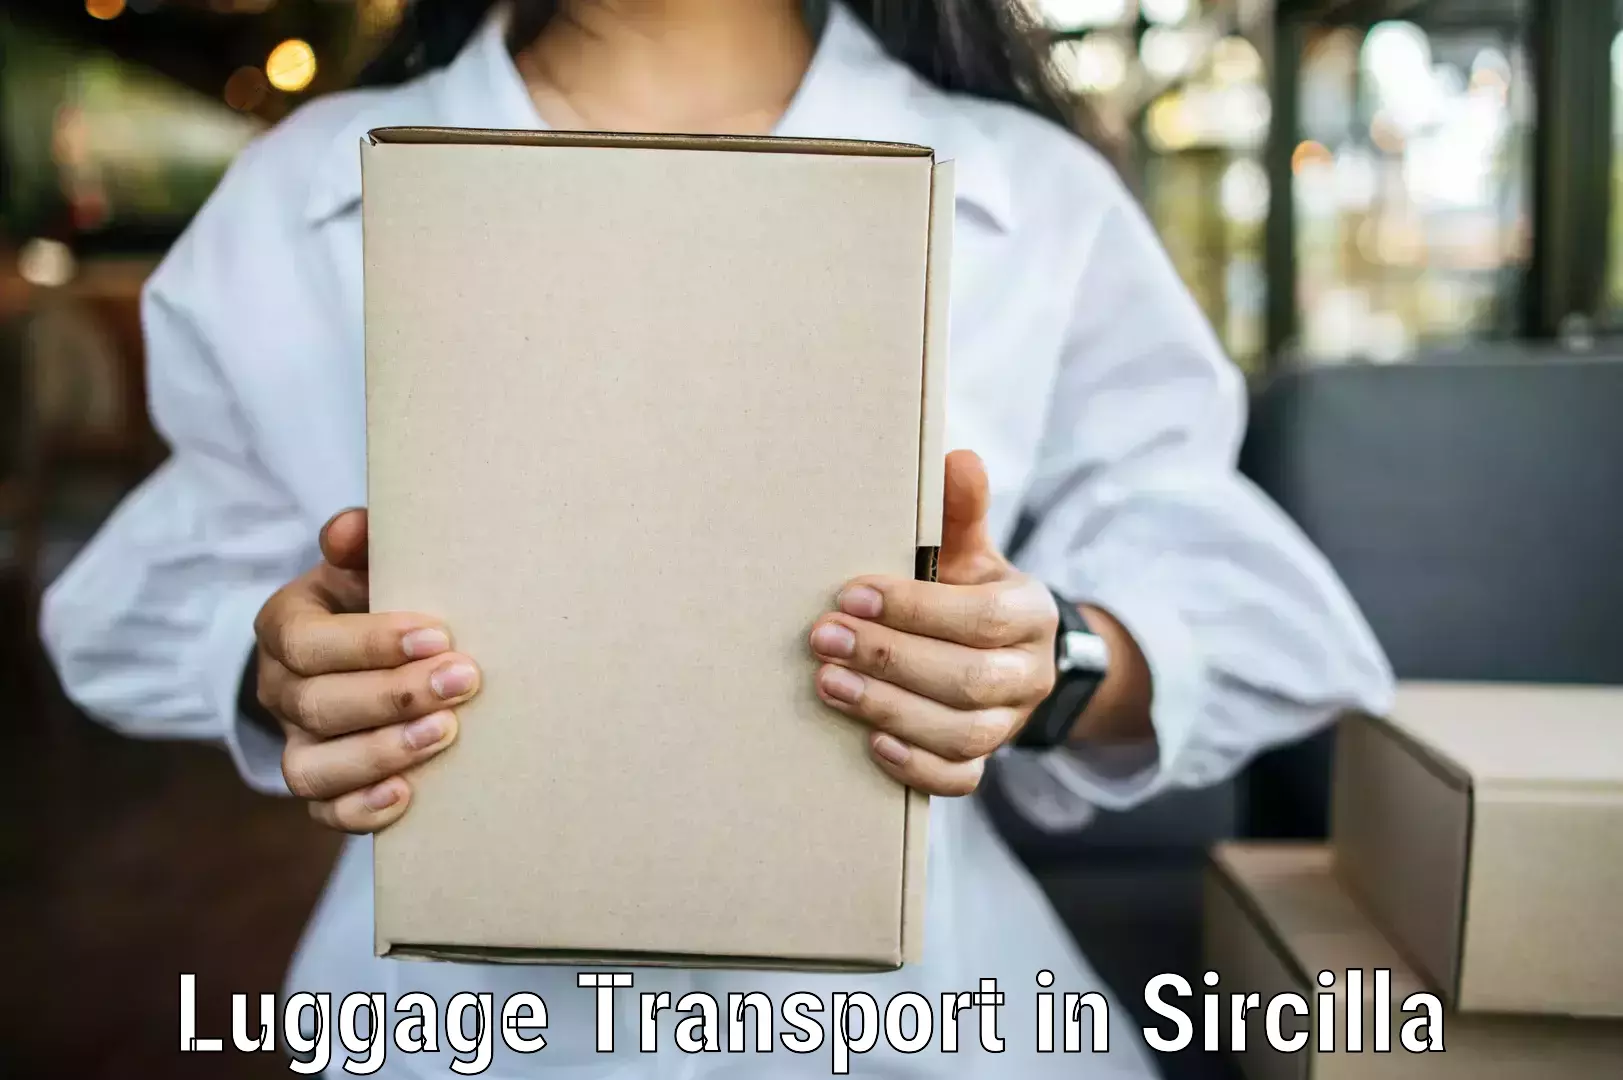 Baggage transport coordination in Sircilla